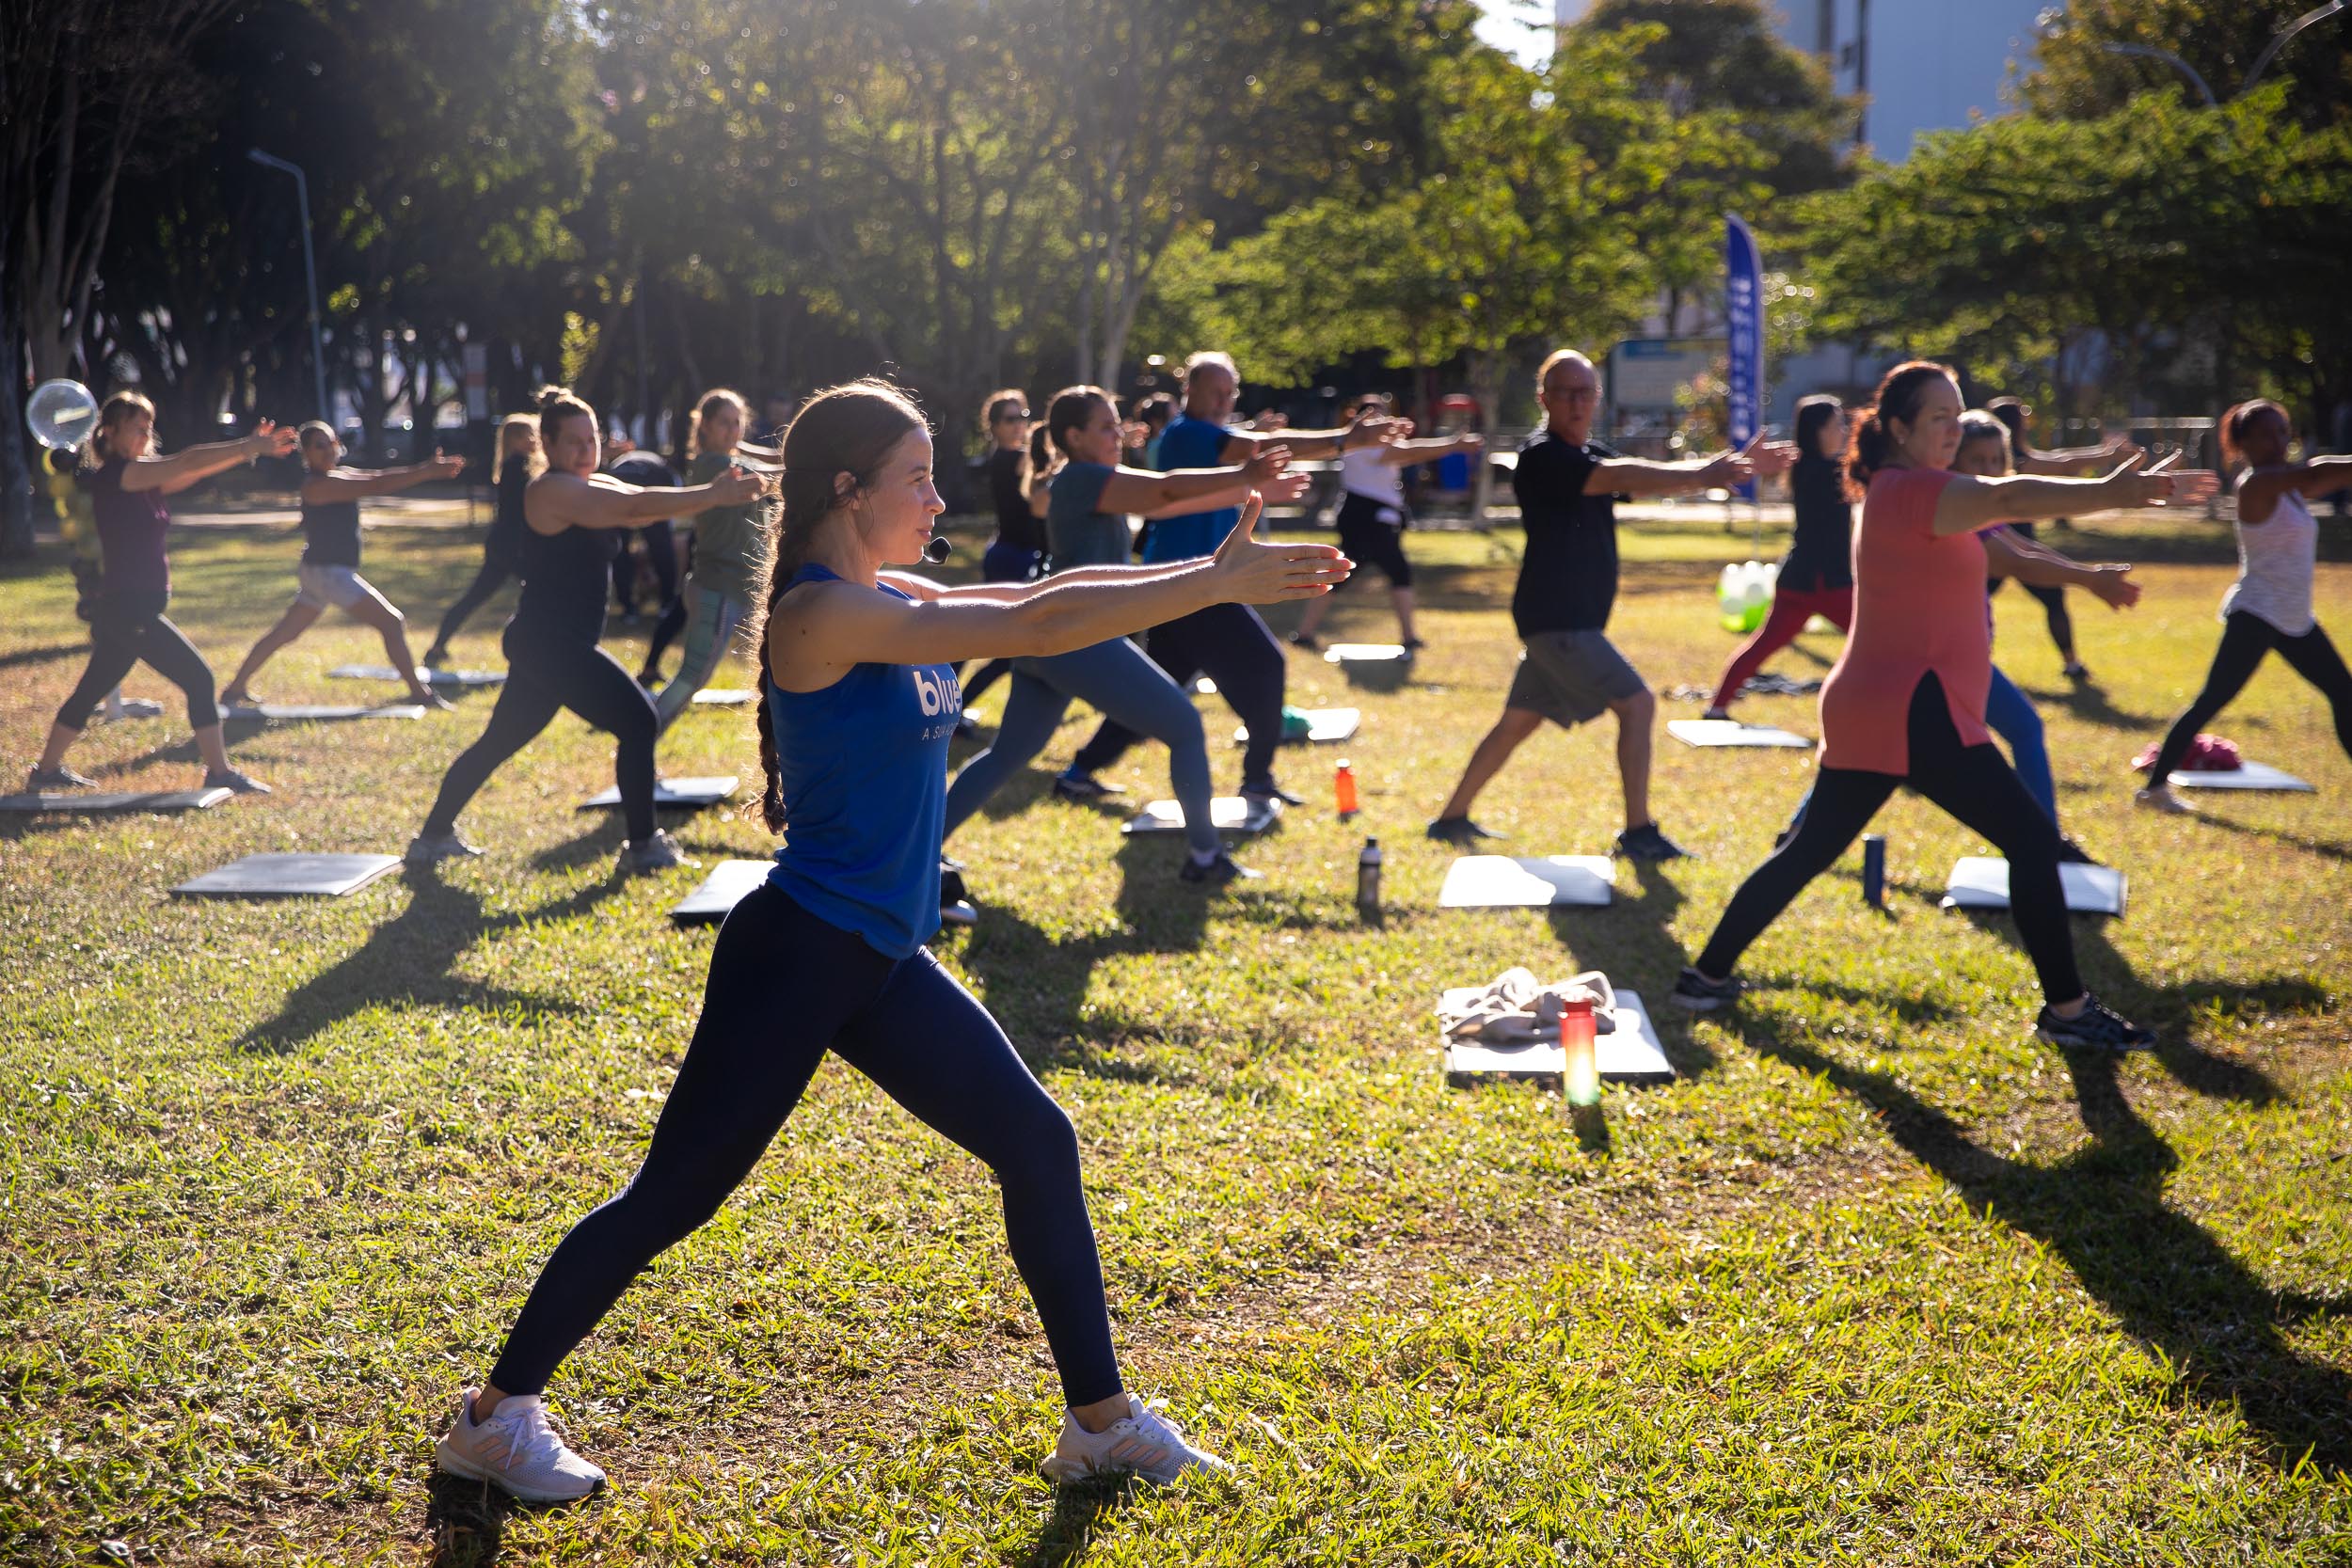 Academia faz aulão de pilates ao ar livre para uma boa dose de vitamina D